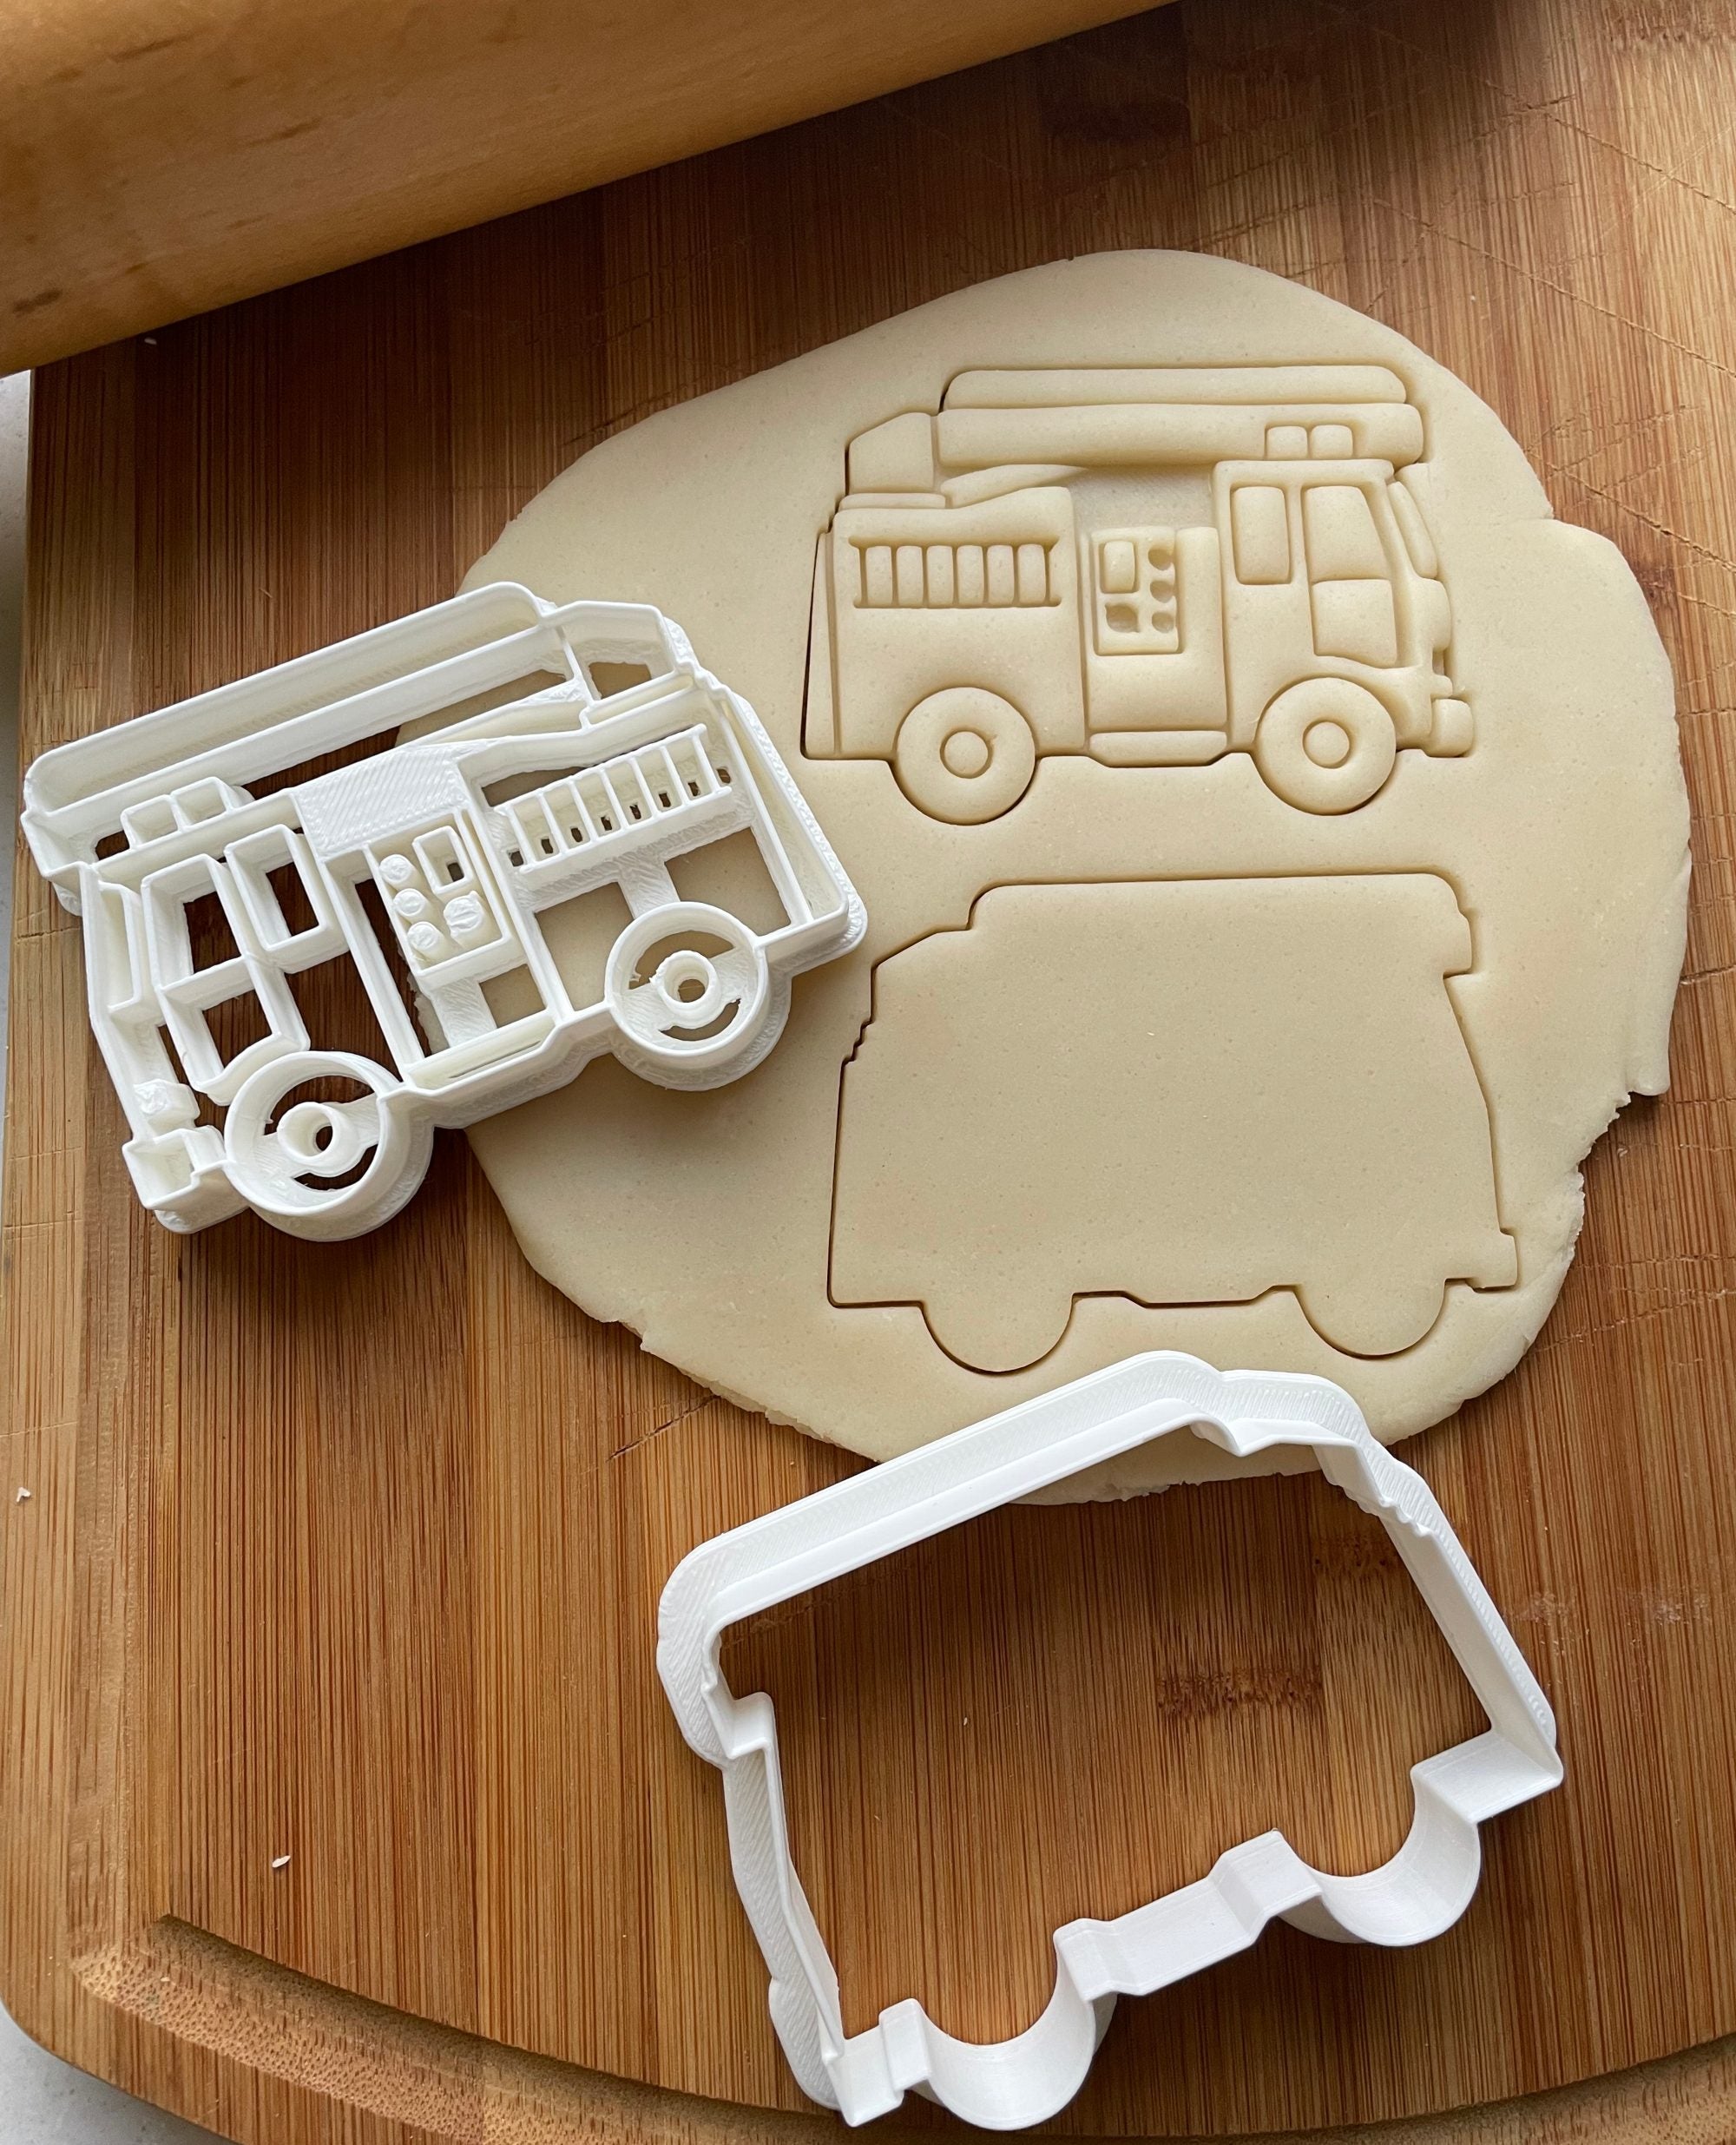 Fire Truck Cookie Cutter – The Flour Box